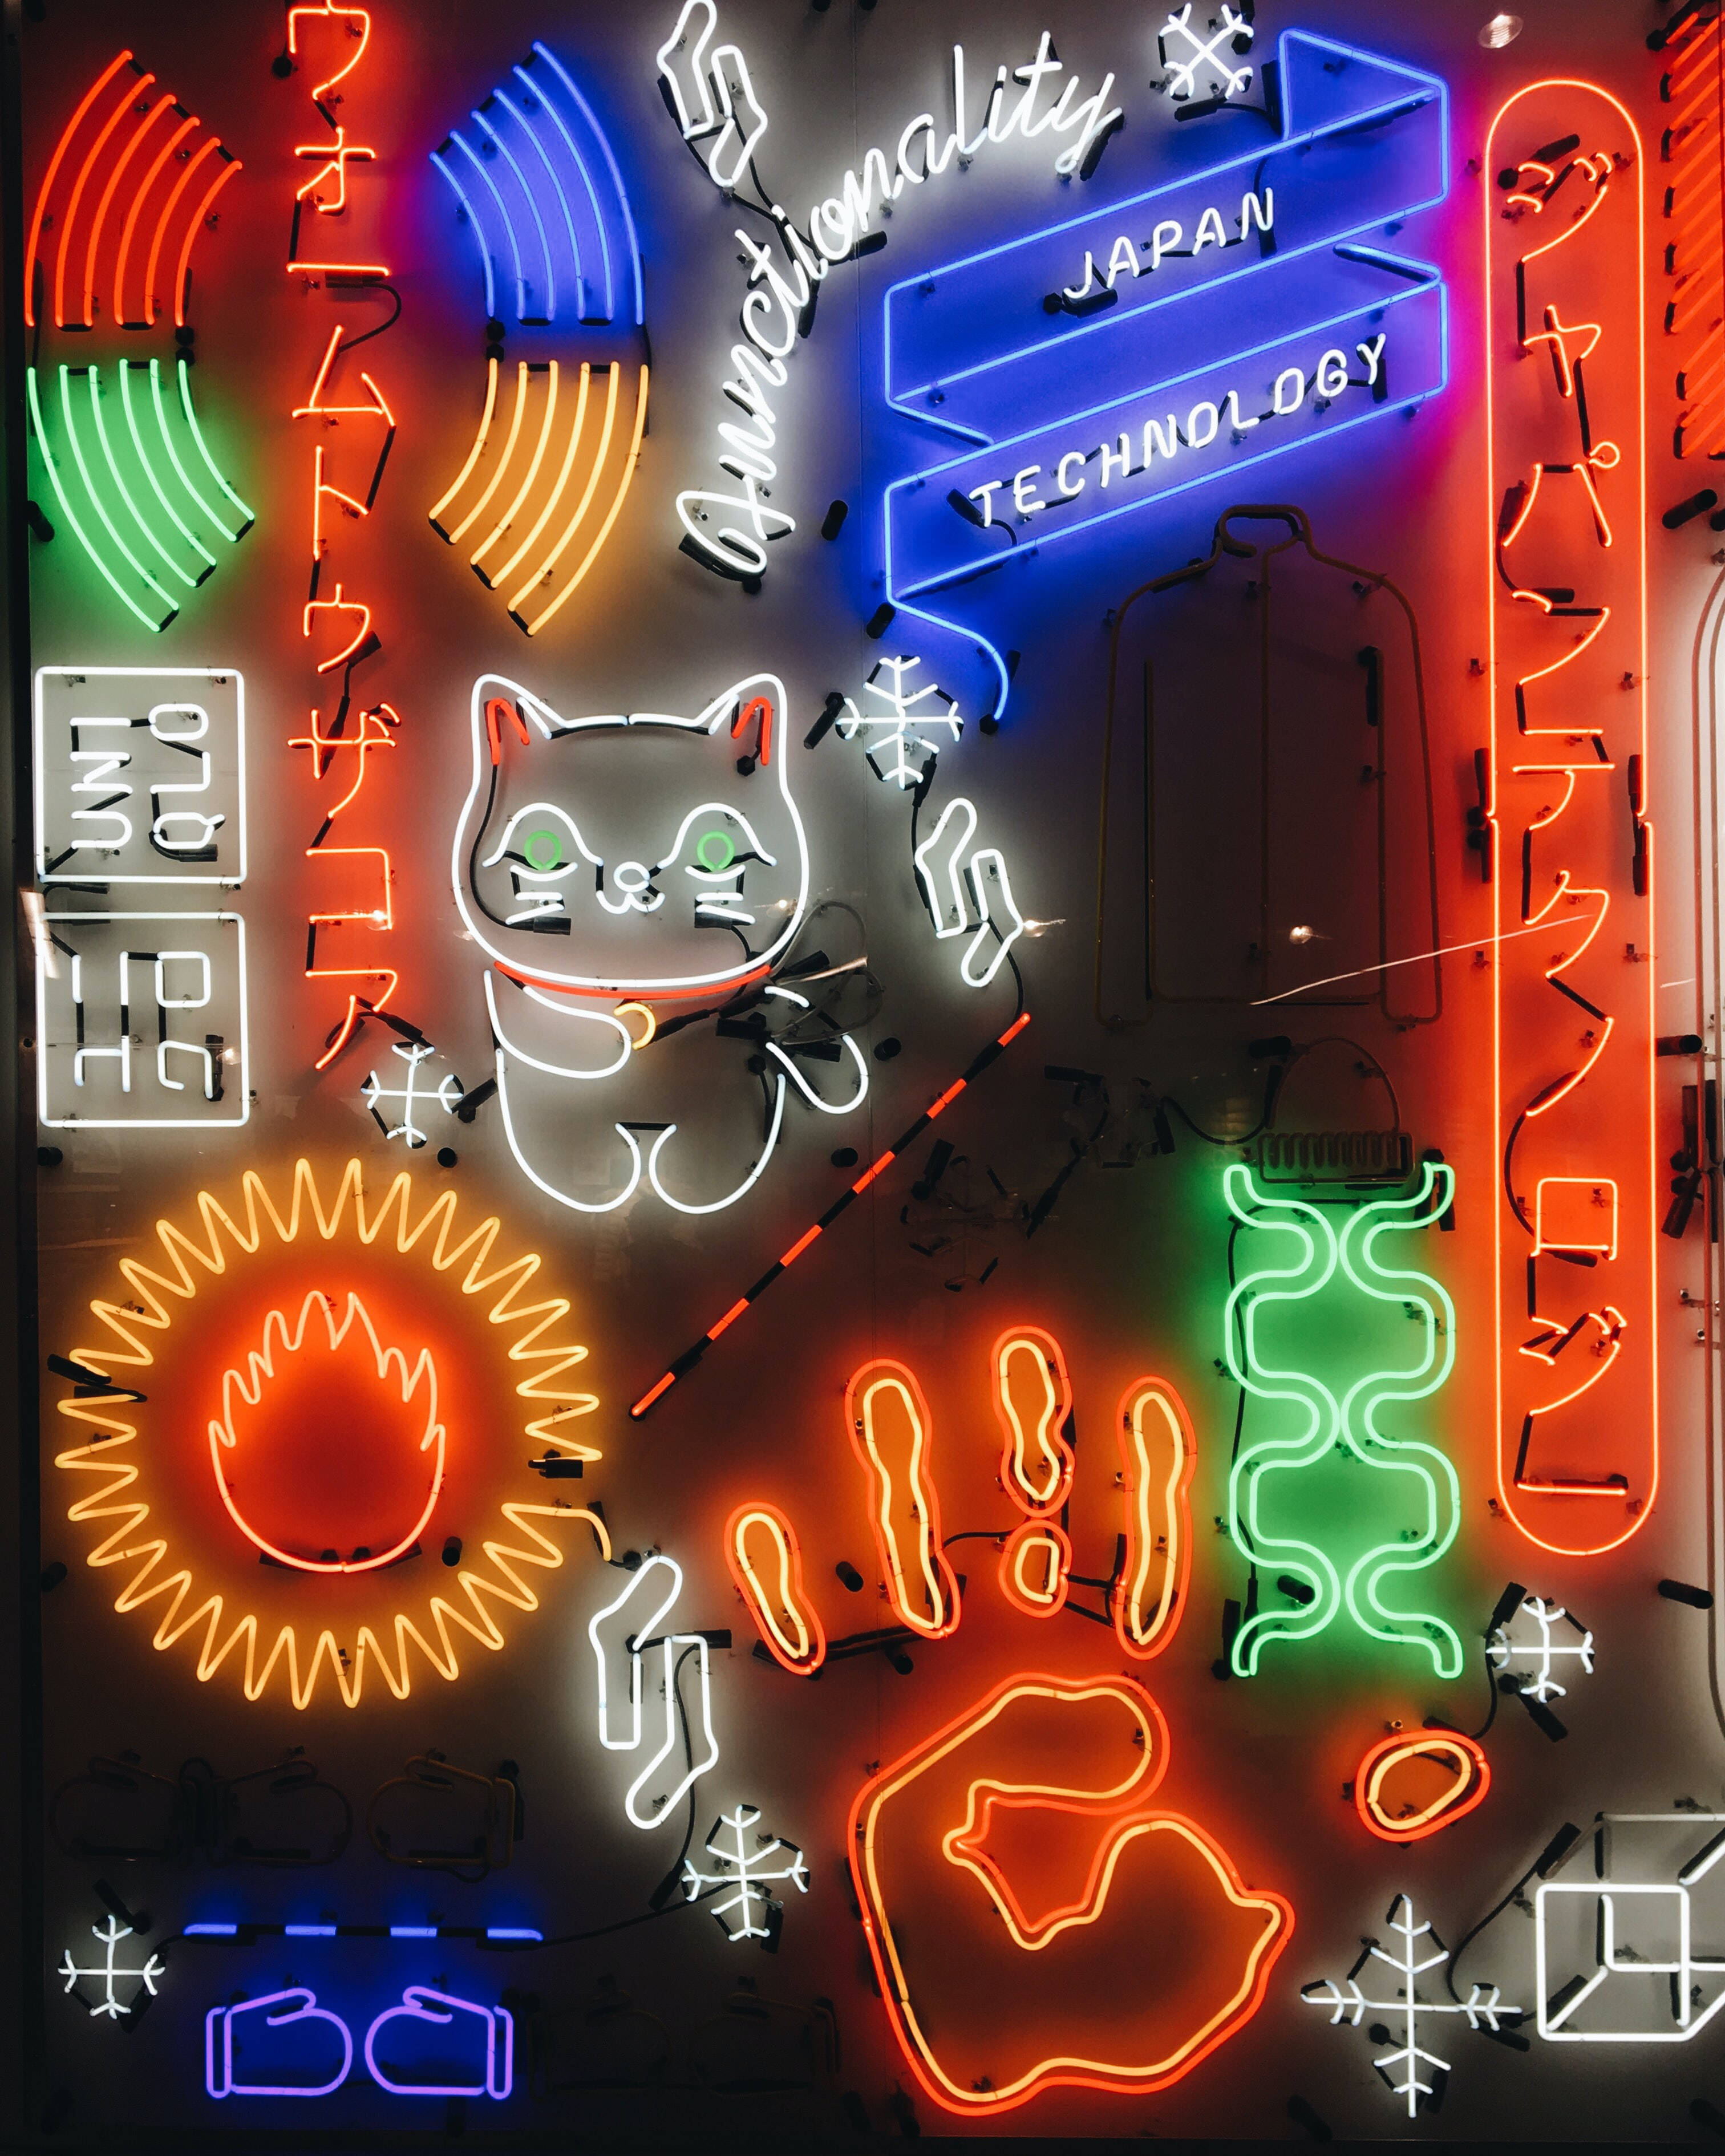 Japanese Hd Neon Art Lights Wallpaper